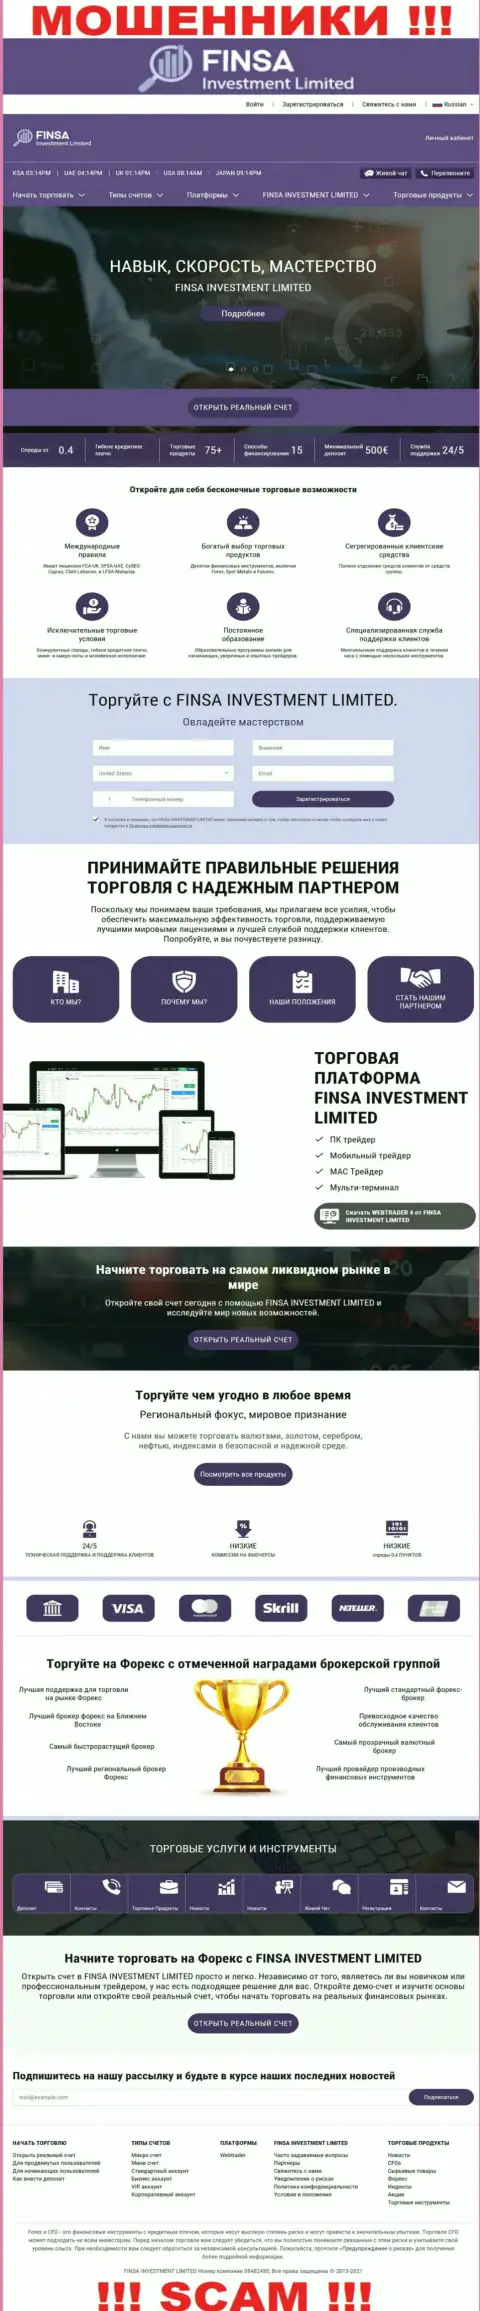 Веб-сервис конторы Finsa Investment Limited, заполненный фейковой инфой